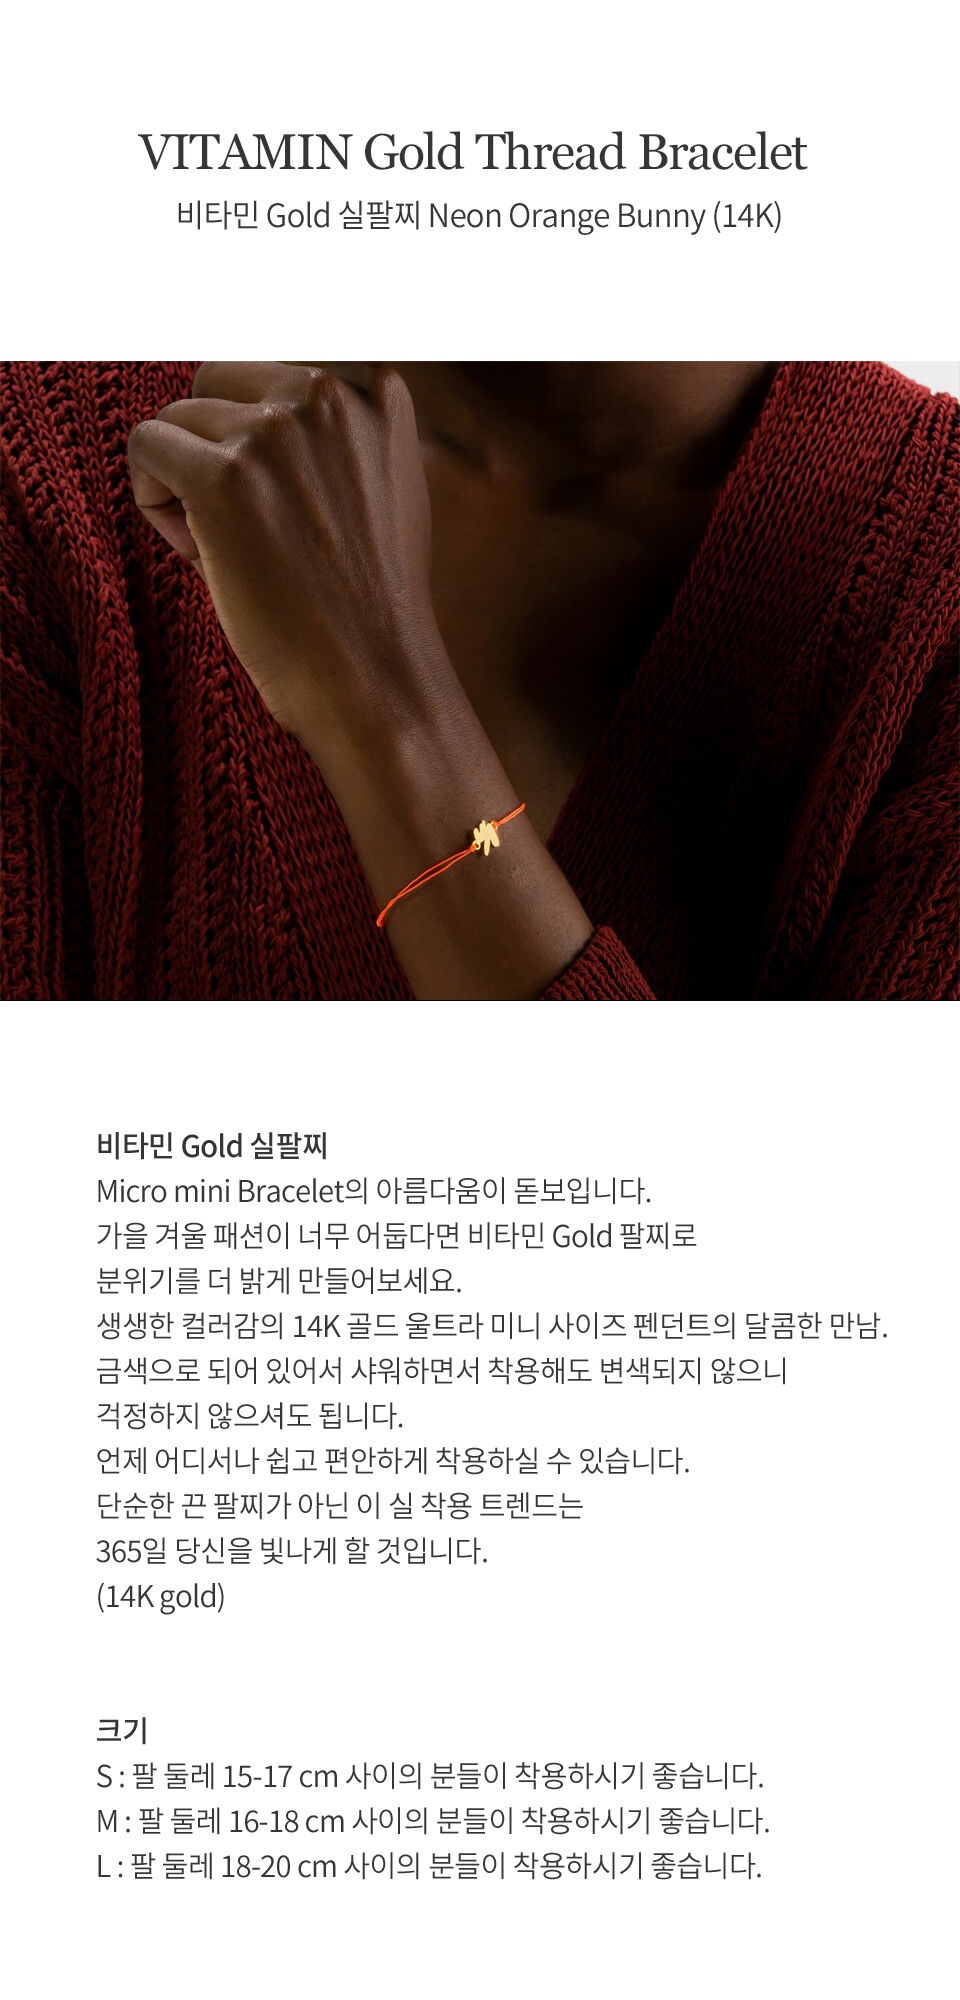 VITAMIN Gold Thread Bracelet Neon Orange Bunny (14K)